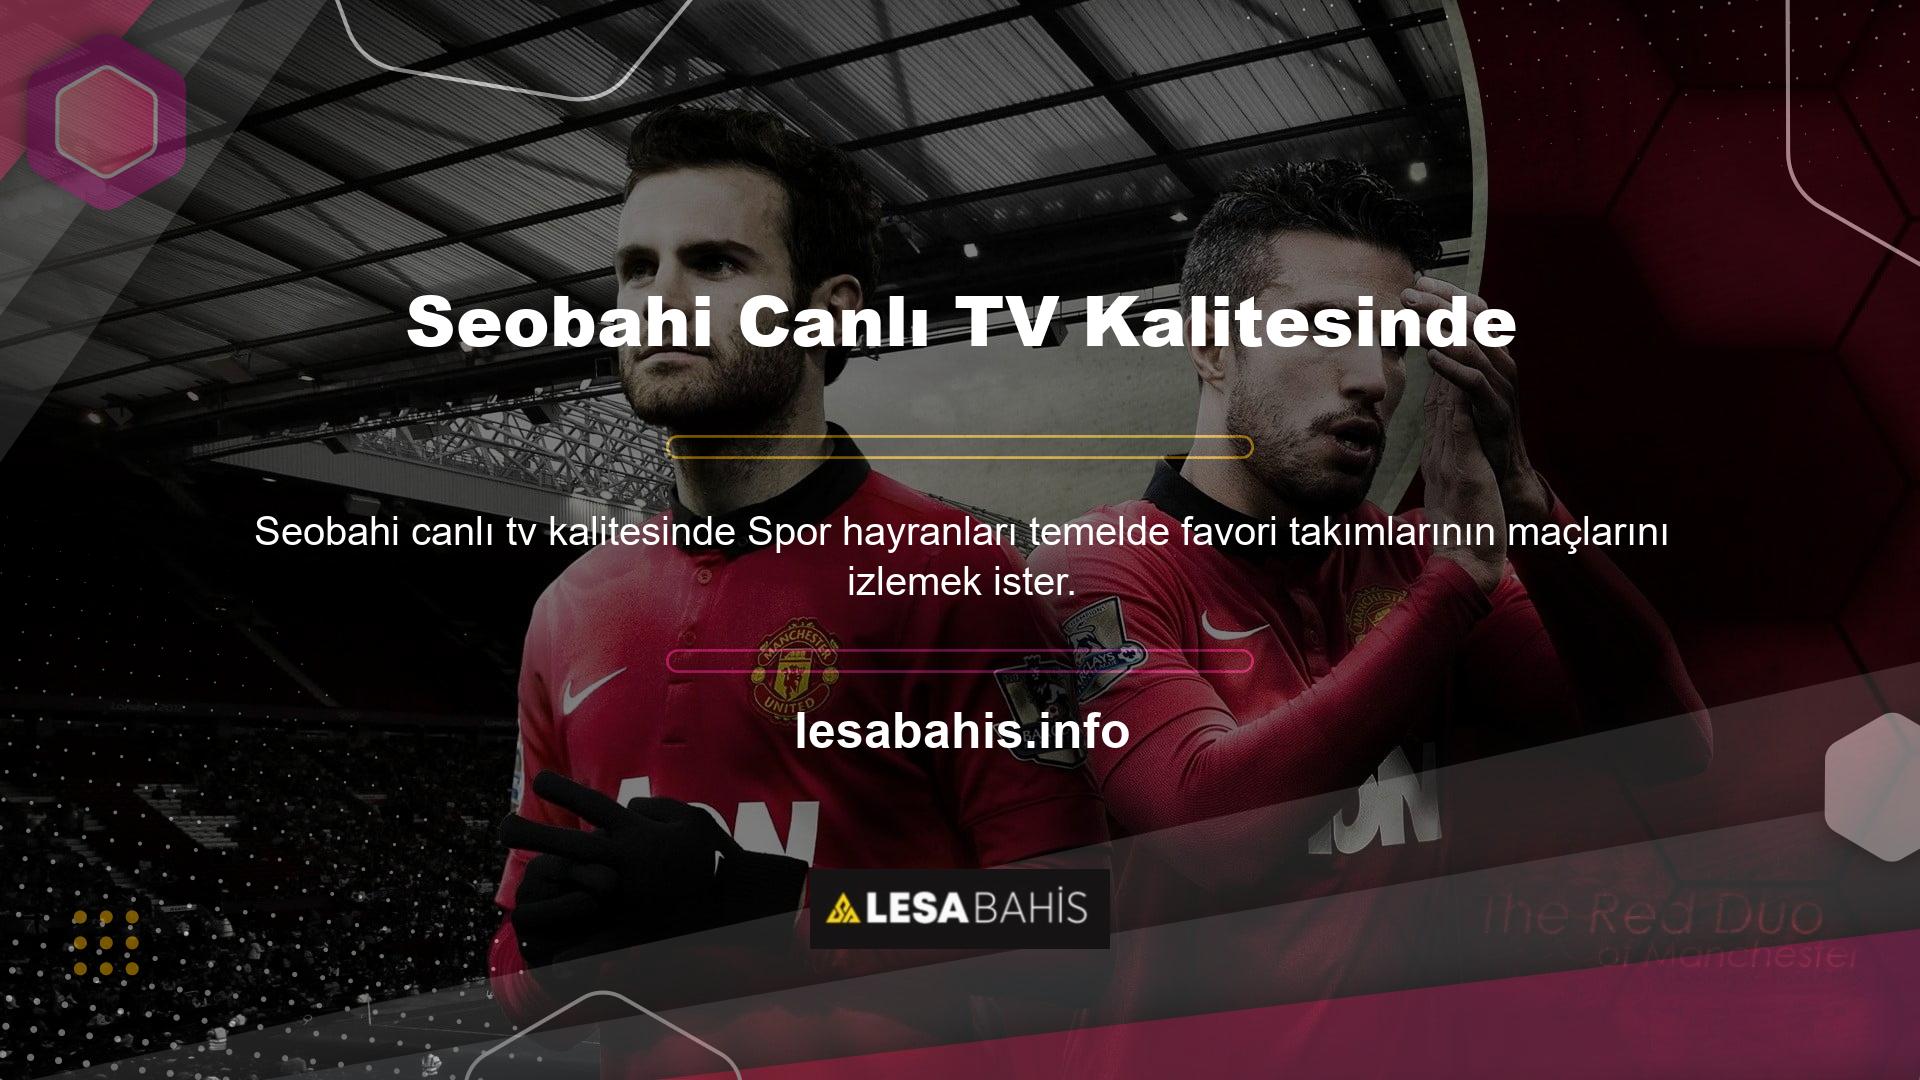 Lesabahis TV web sitesi, yüksek kalitede canlı yayın hizmeti sunmakta ve üyelerine çeşitli seçenekler sunmaktadır